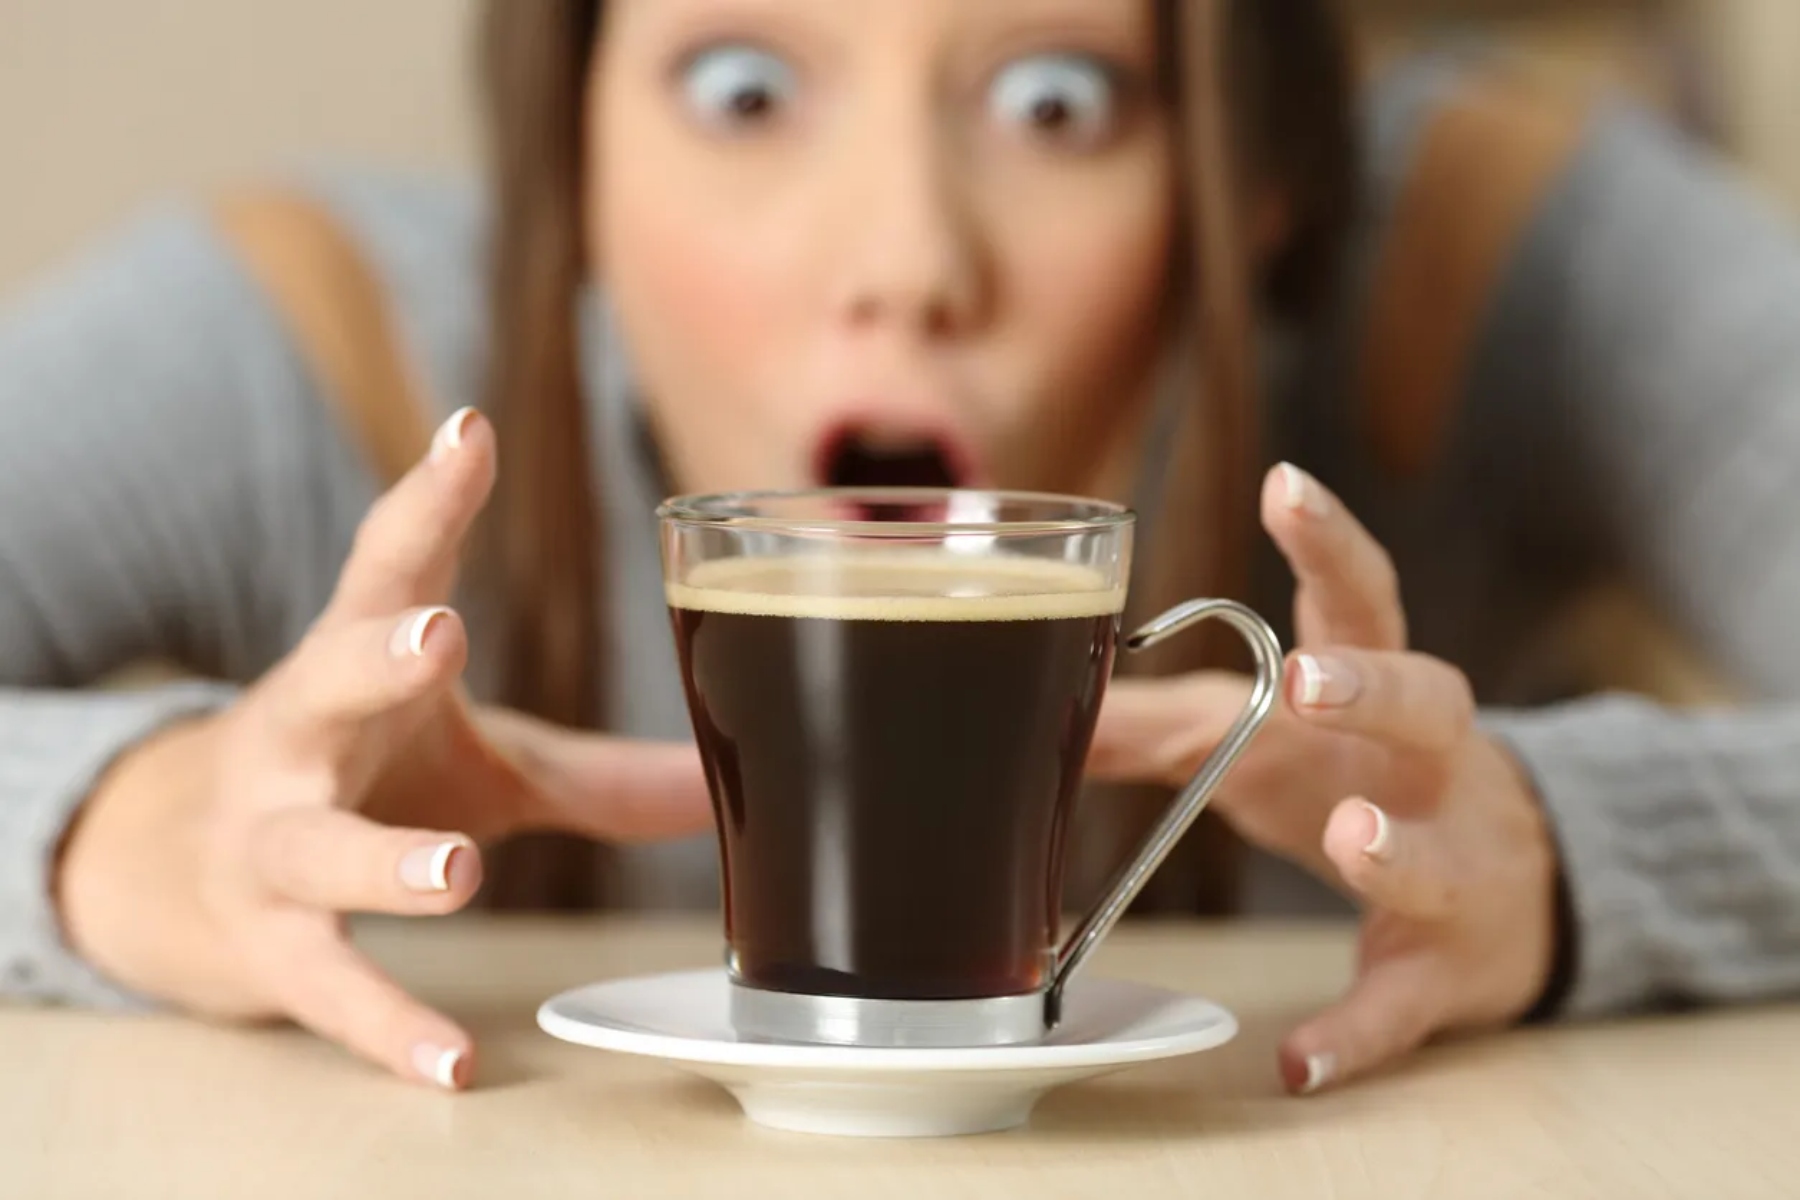 Decaf: Ο καφές χωρίς καφεΐνη βοηθά στη μείωση των συμπτωμάτων στέρησης